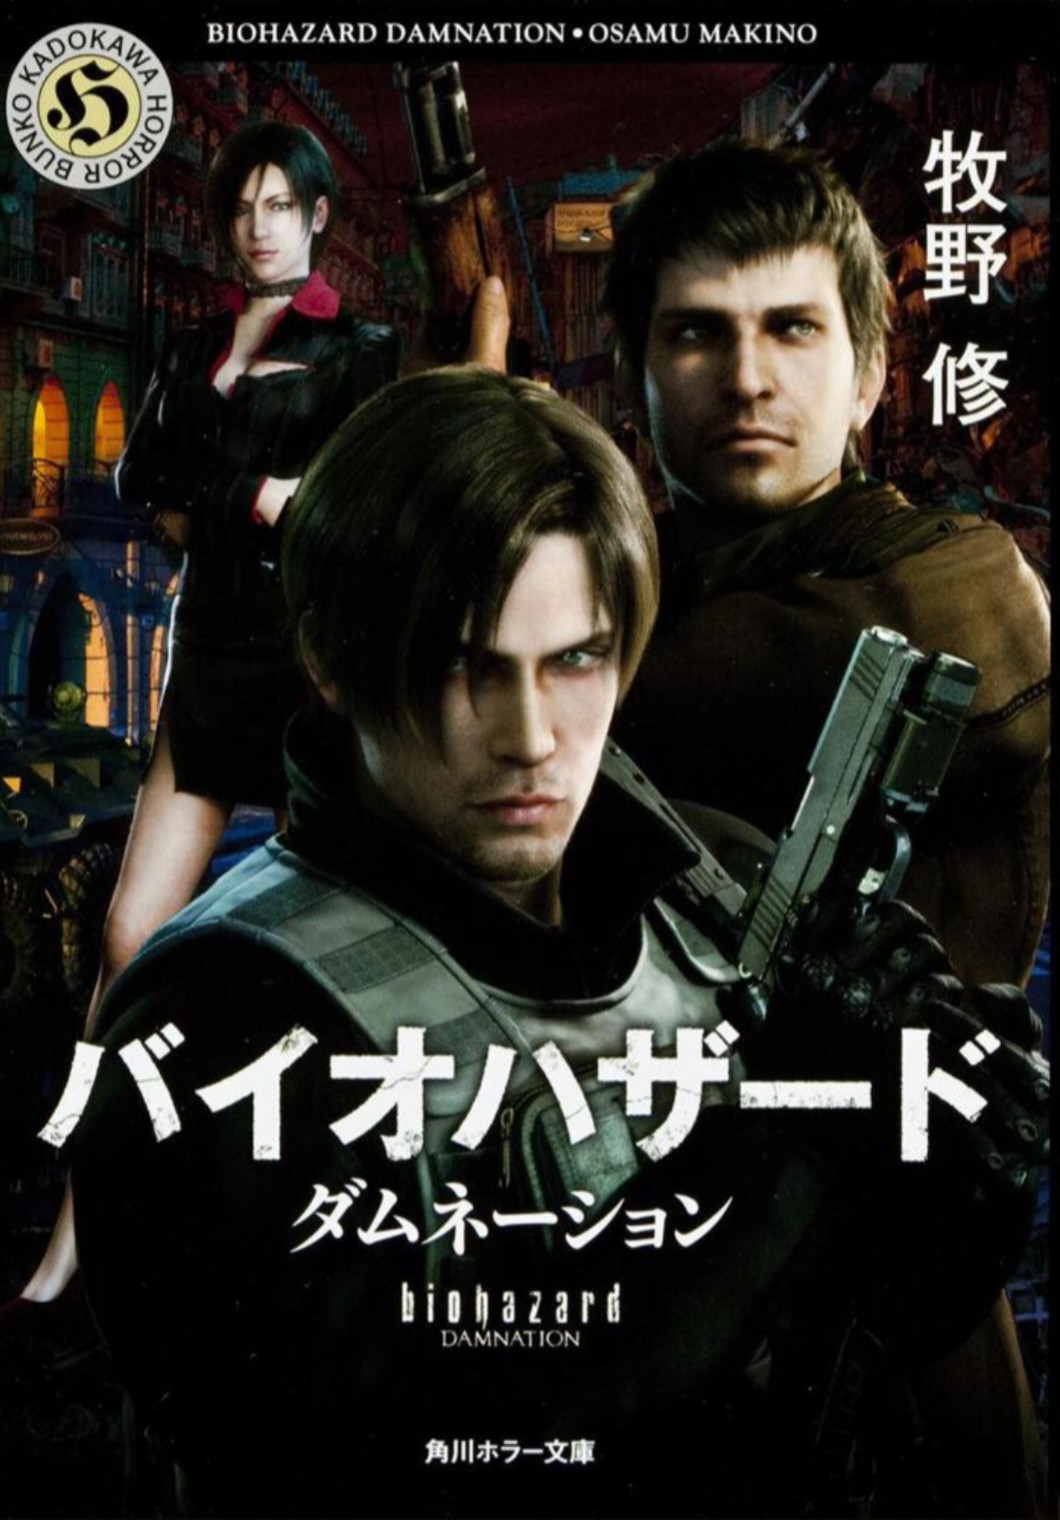 The Mercenaries United, Resident Evil Wiki